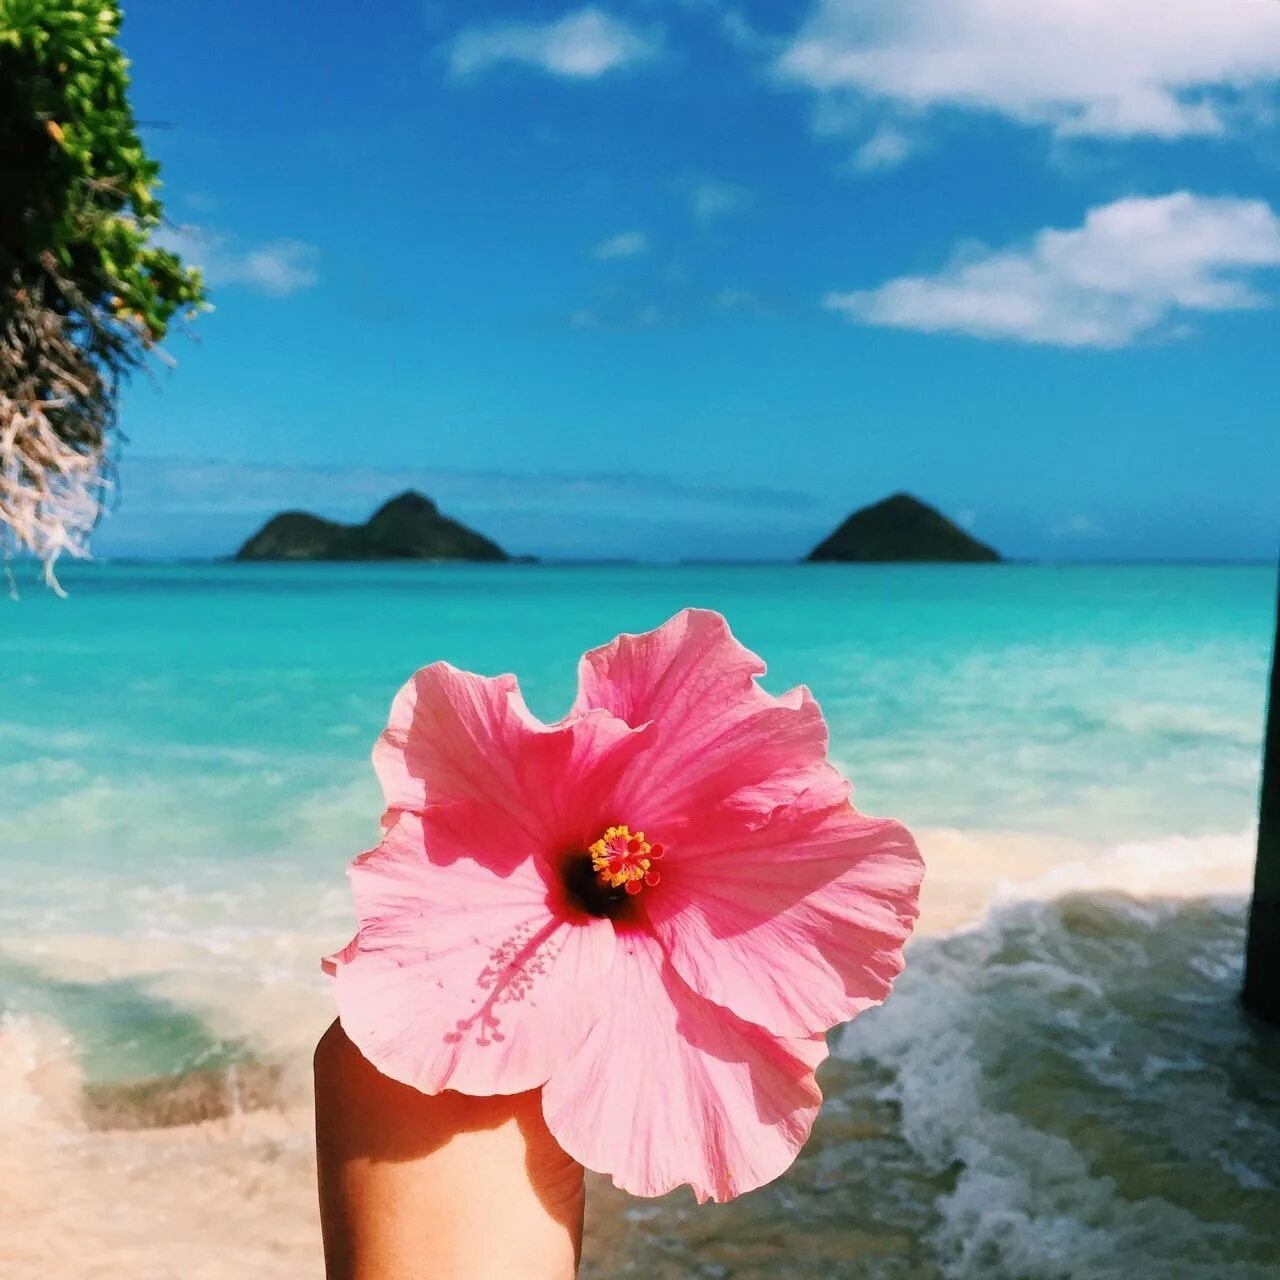 Лето цвет розовый. Цветы и море. Пляж с красивыми цветами. Цветы на фоне моря. Цветочек на фоне моря.